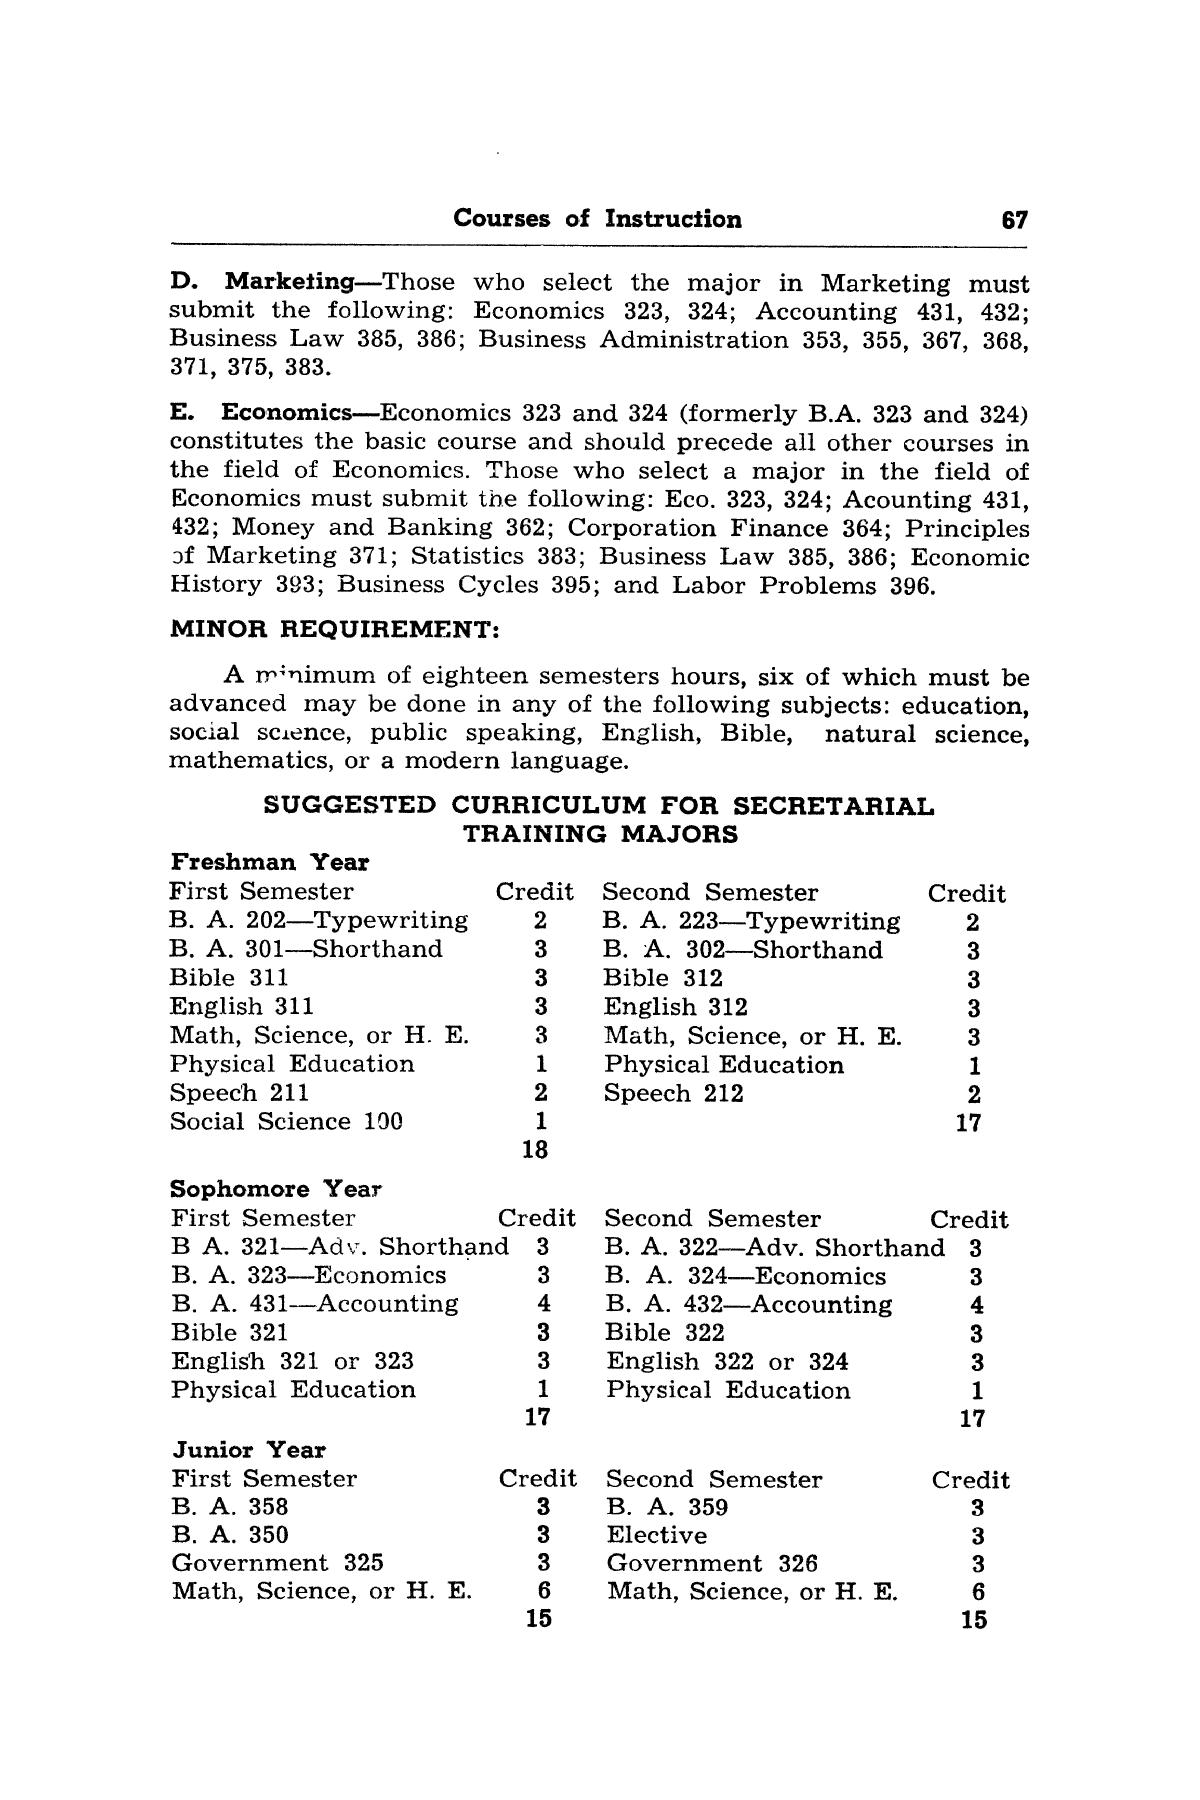 Catalog of Abilene Christian College, 1950-1951
                                                
                                                    67
                                                